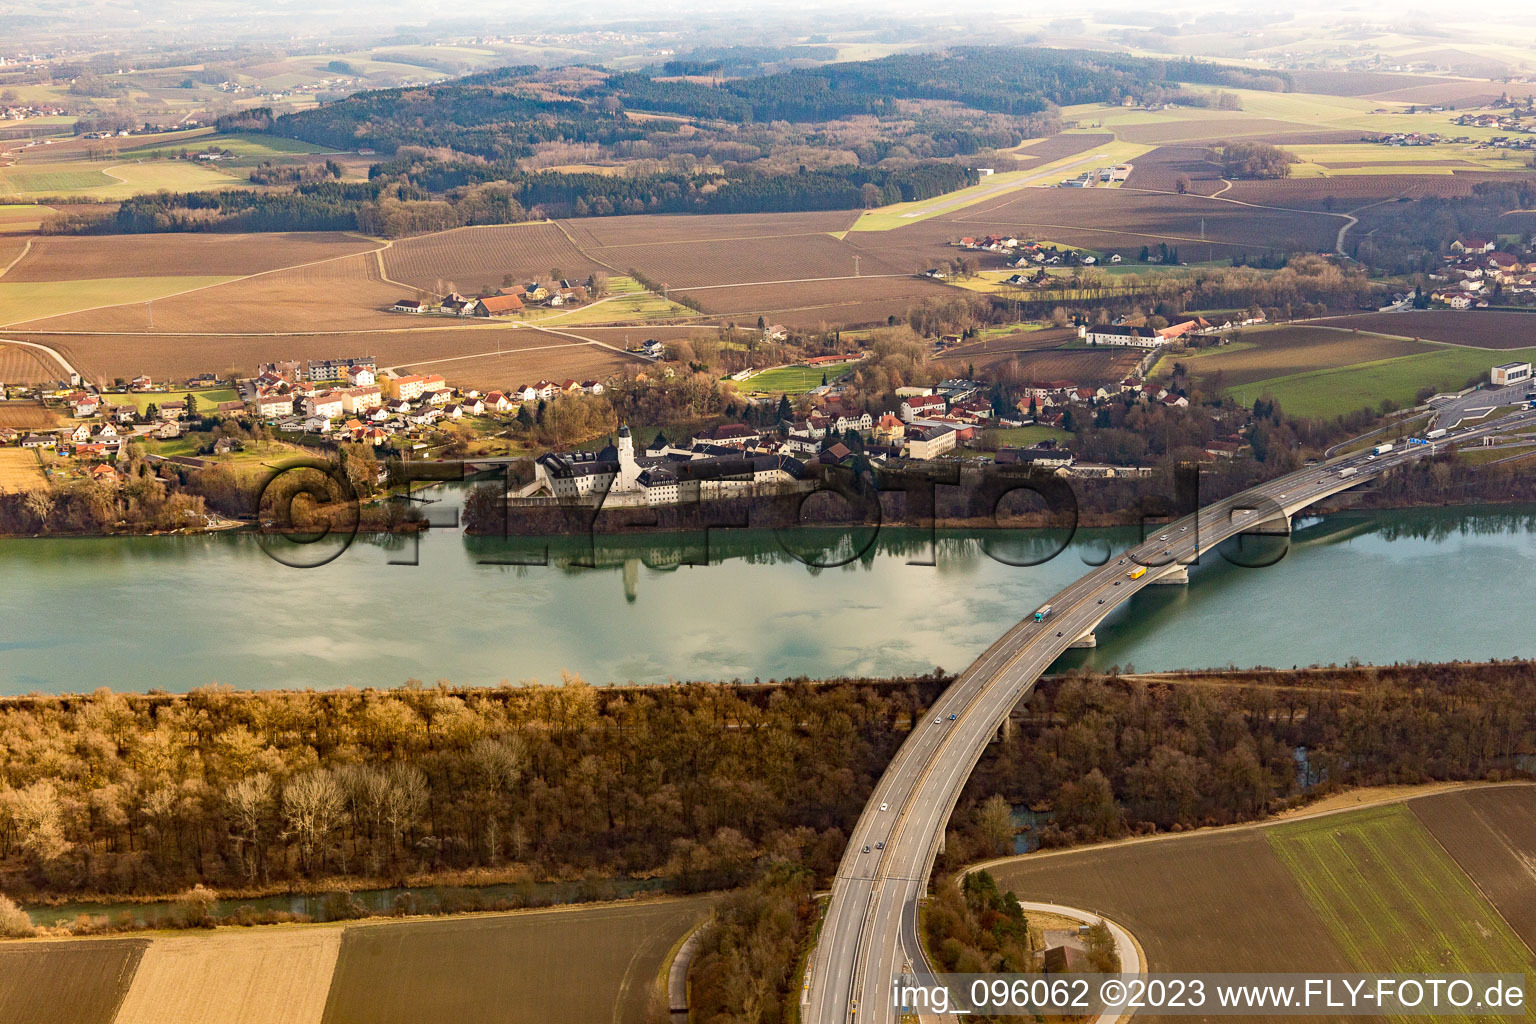 Vue aérienne de Prison de l'Inautobahnbrücke à Suben dans le département Haute-Autriche, L'Autriche